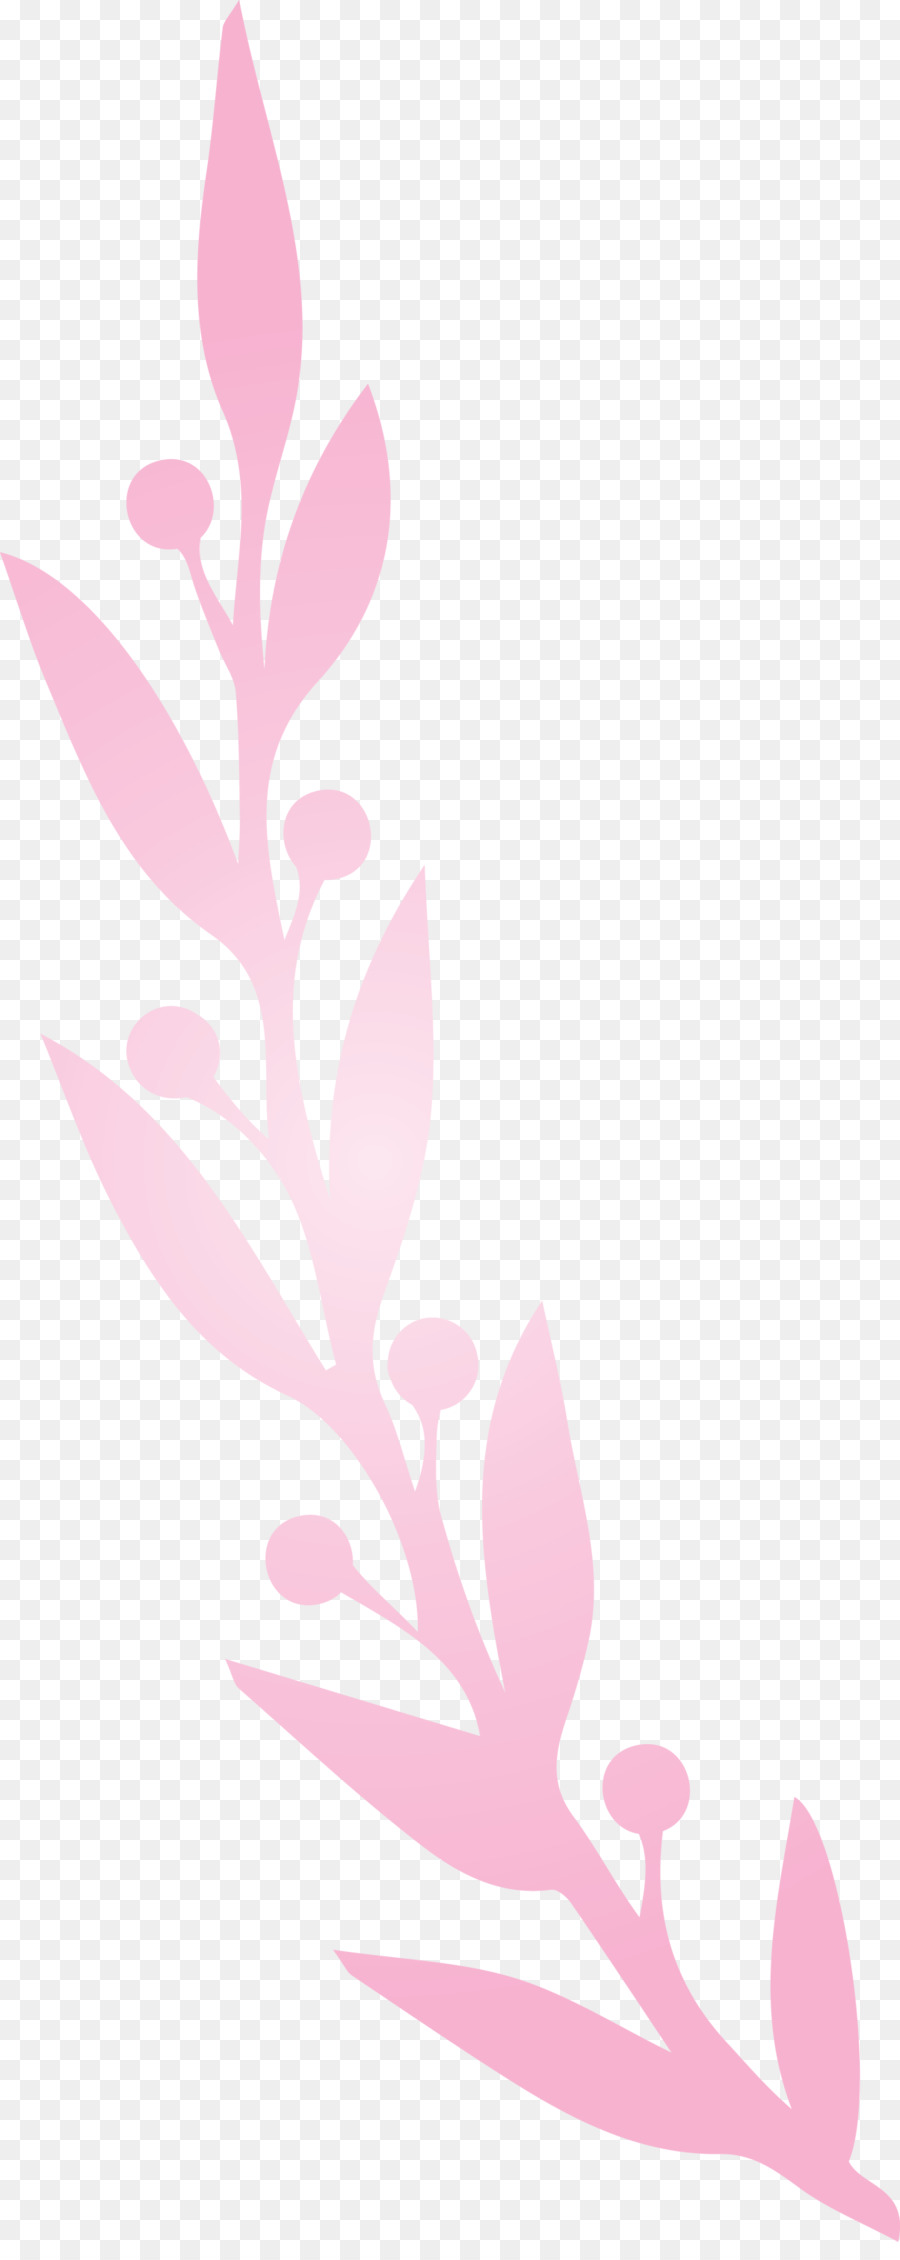 pianta, stelo, petalo, foglia ramoscello di rosa m - 